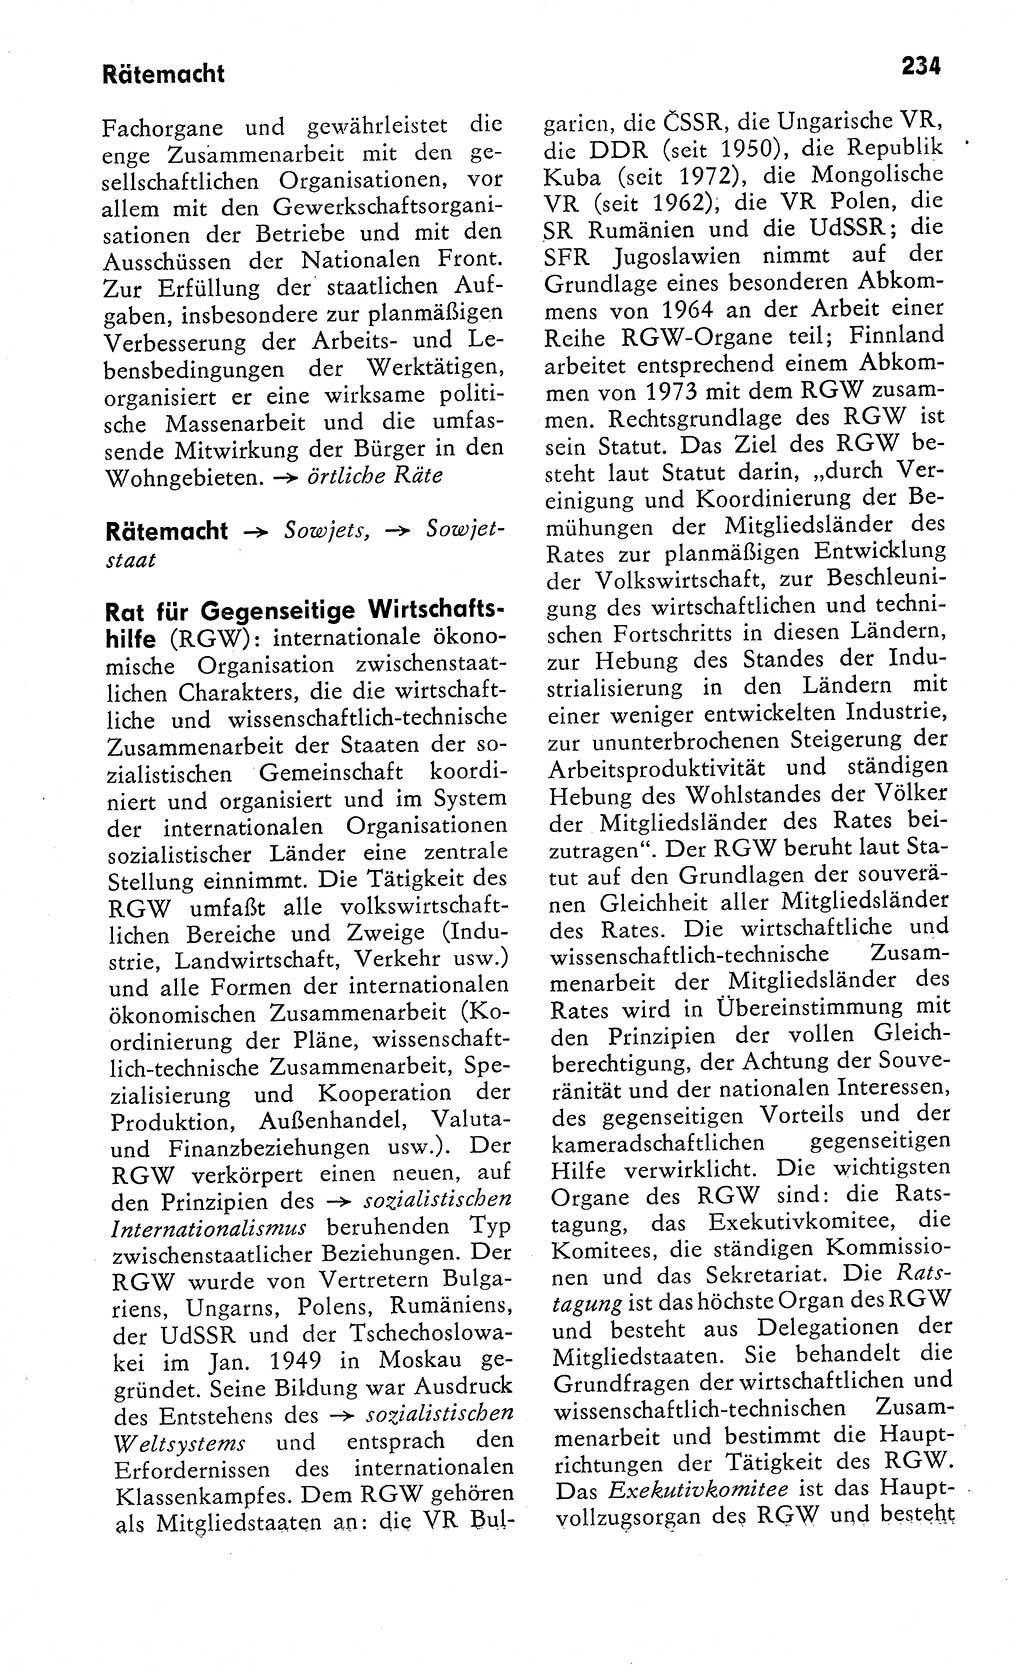 Wörterbuch zum sozialistischen Staat [Deutsche Demokratische Republik (DDR)] 1974, Seite 234 (Wb. soz. St. DDR 1974, S. 234)